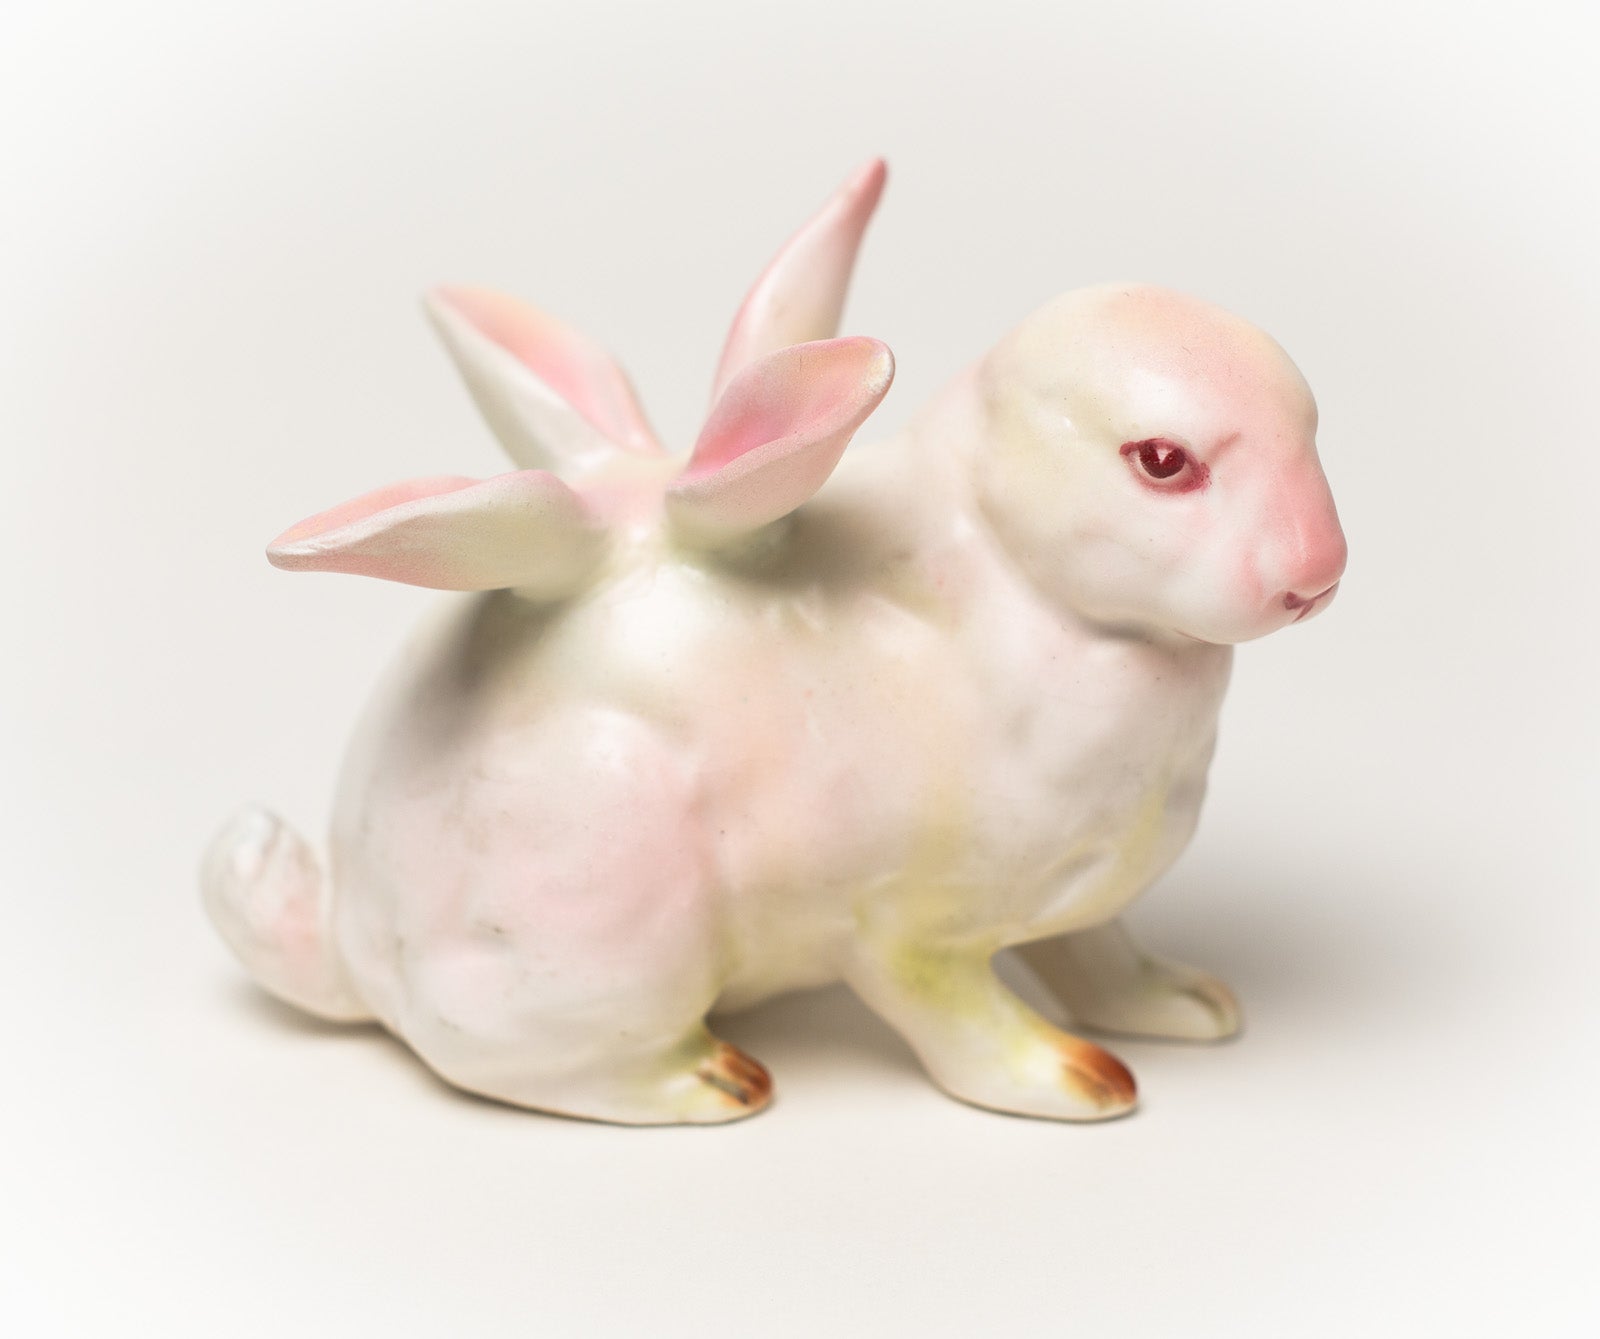 Debra Broz – White Rabbit, No. 13, 2019